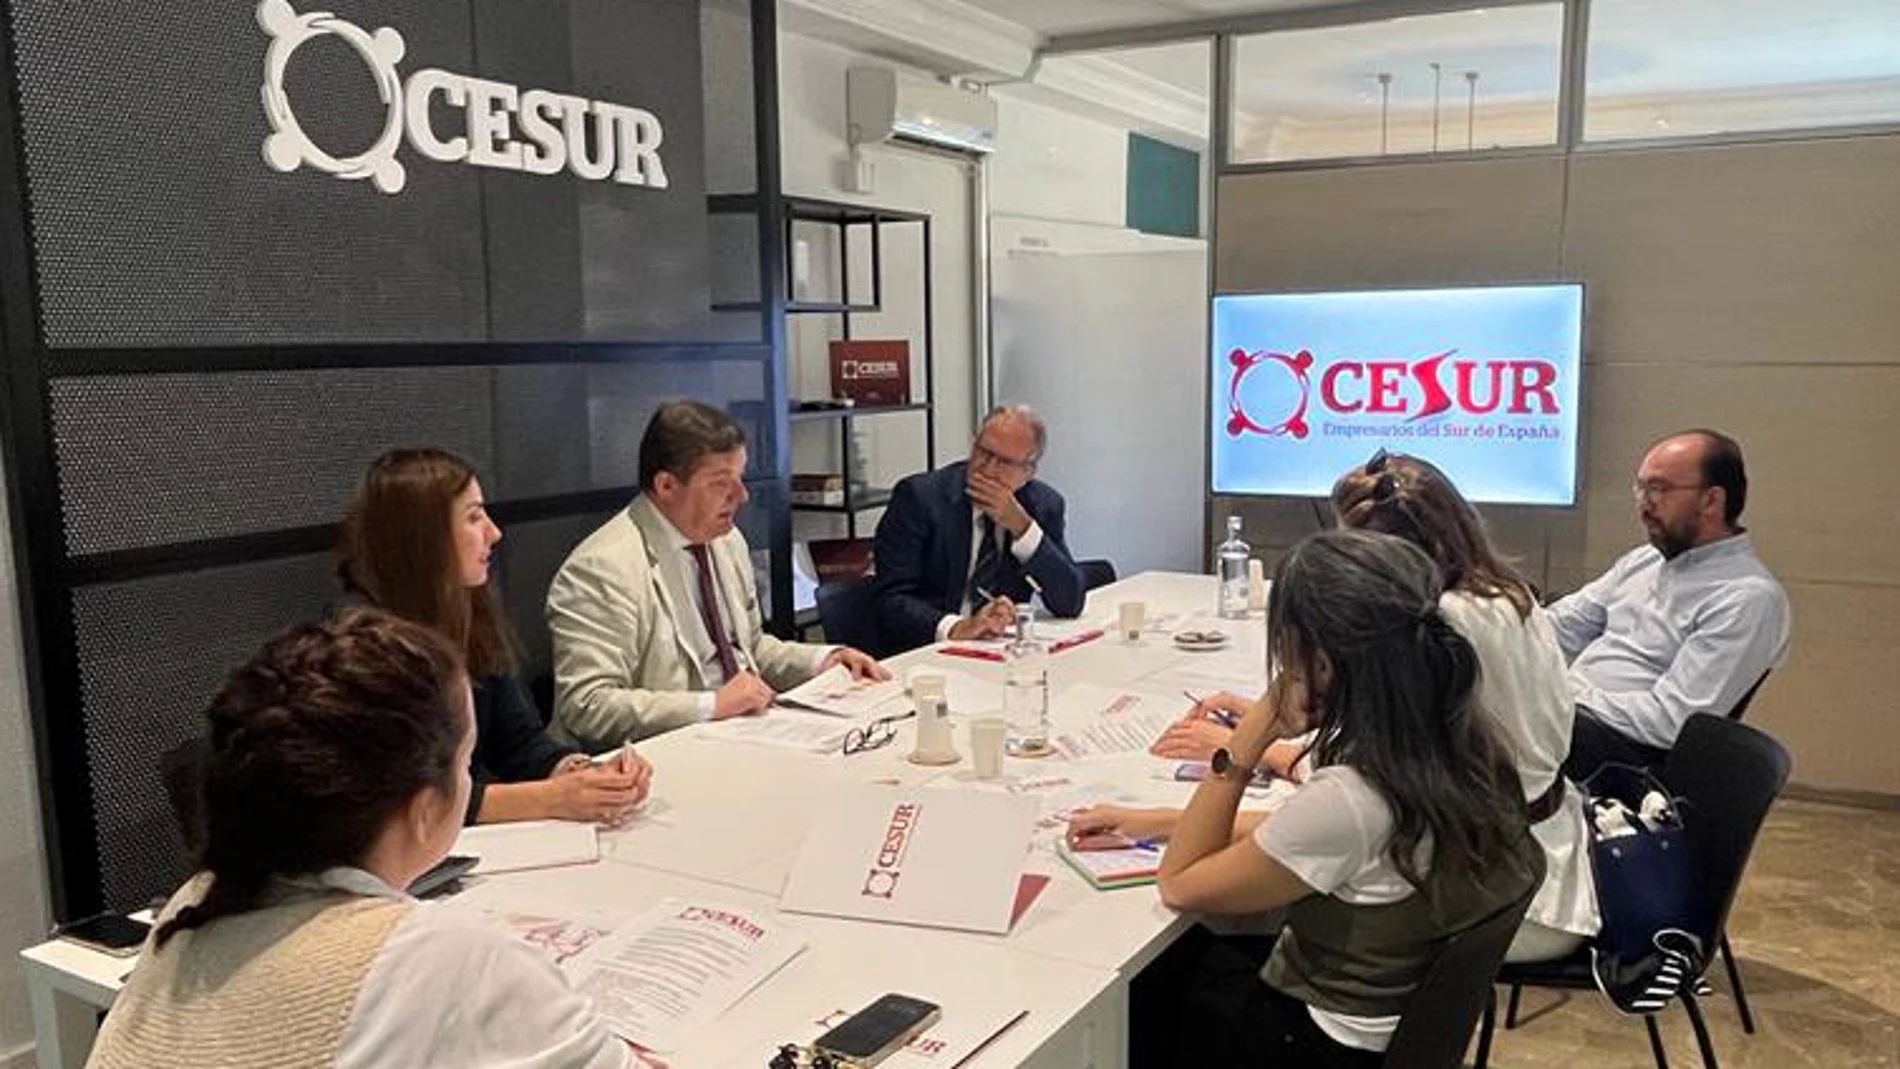 En la rueda de prensa han participado Juan Iturri, presidente de Cesur; Fernando Seco, vicepresidente ejecutivo de Cesur; y Carlota García Jarana, adjunta a la dirección de Cesur.